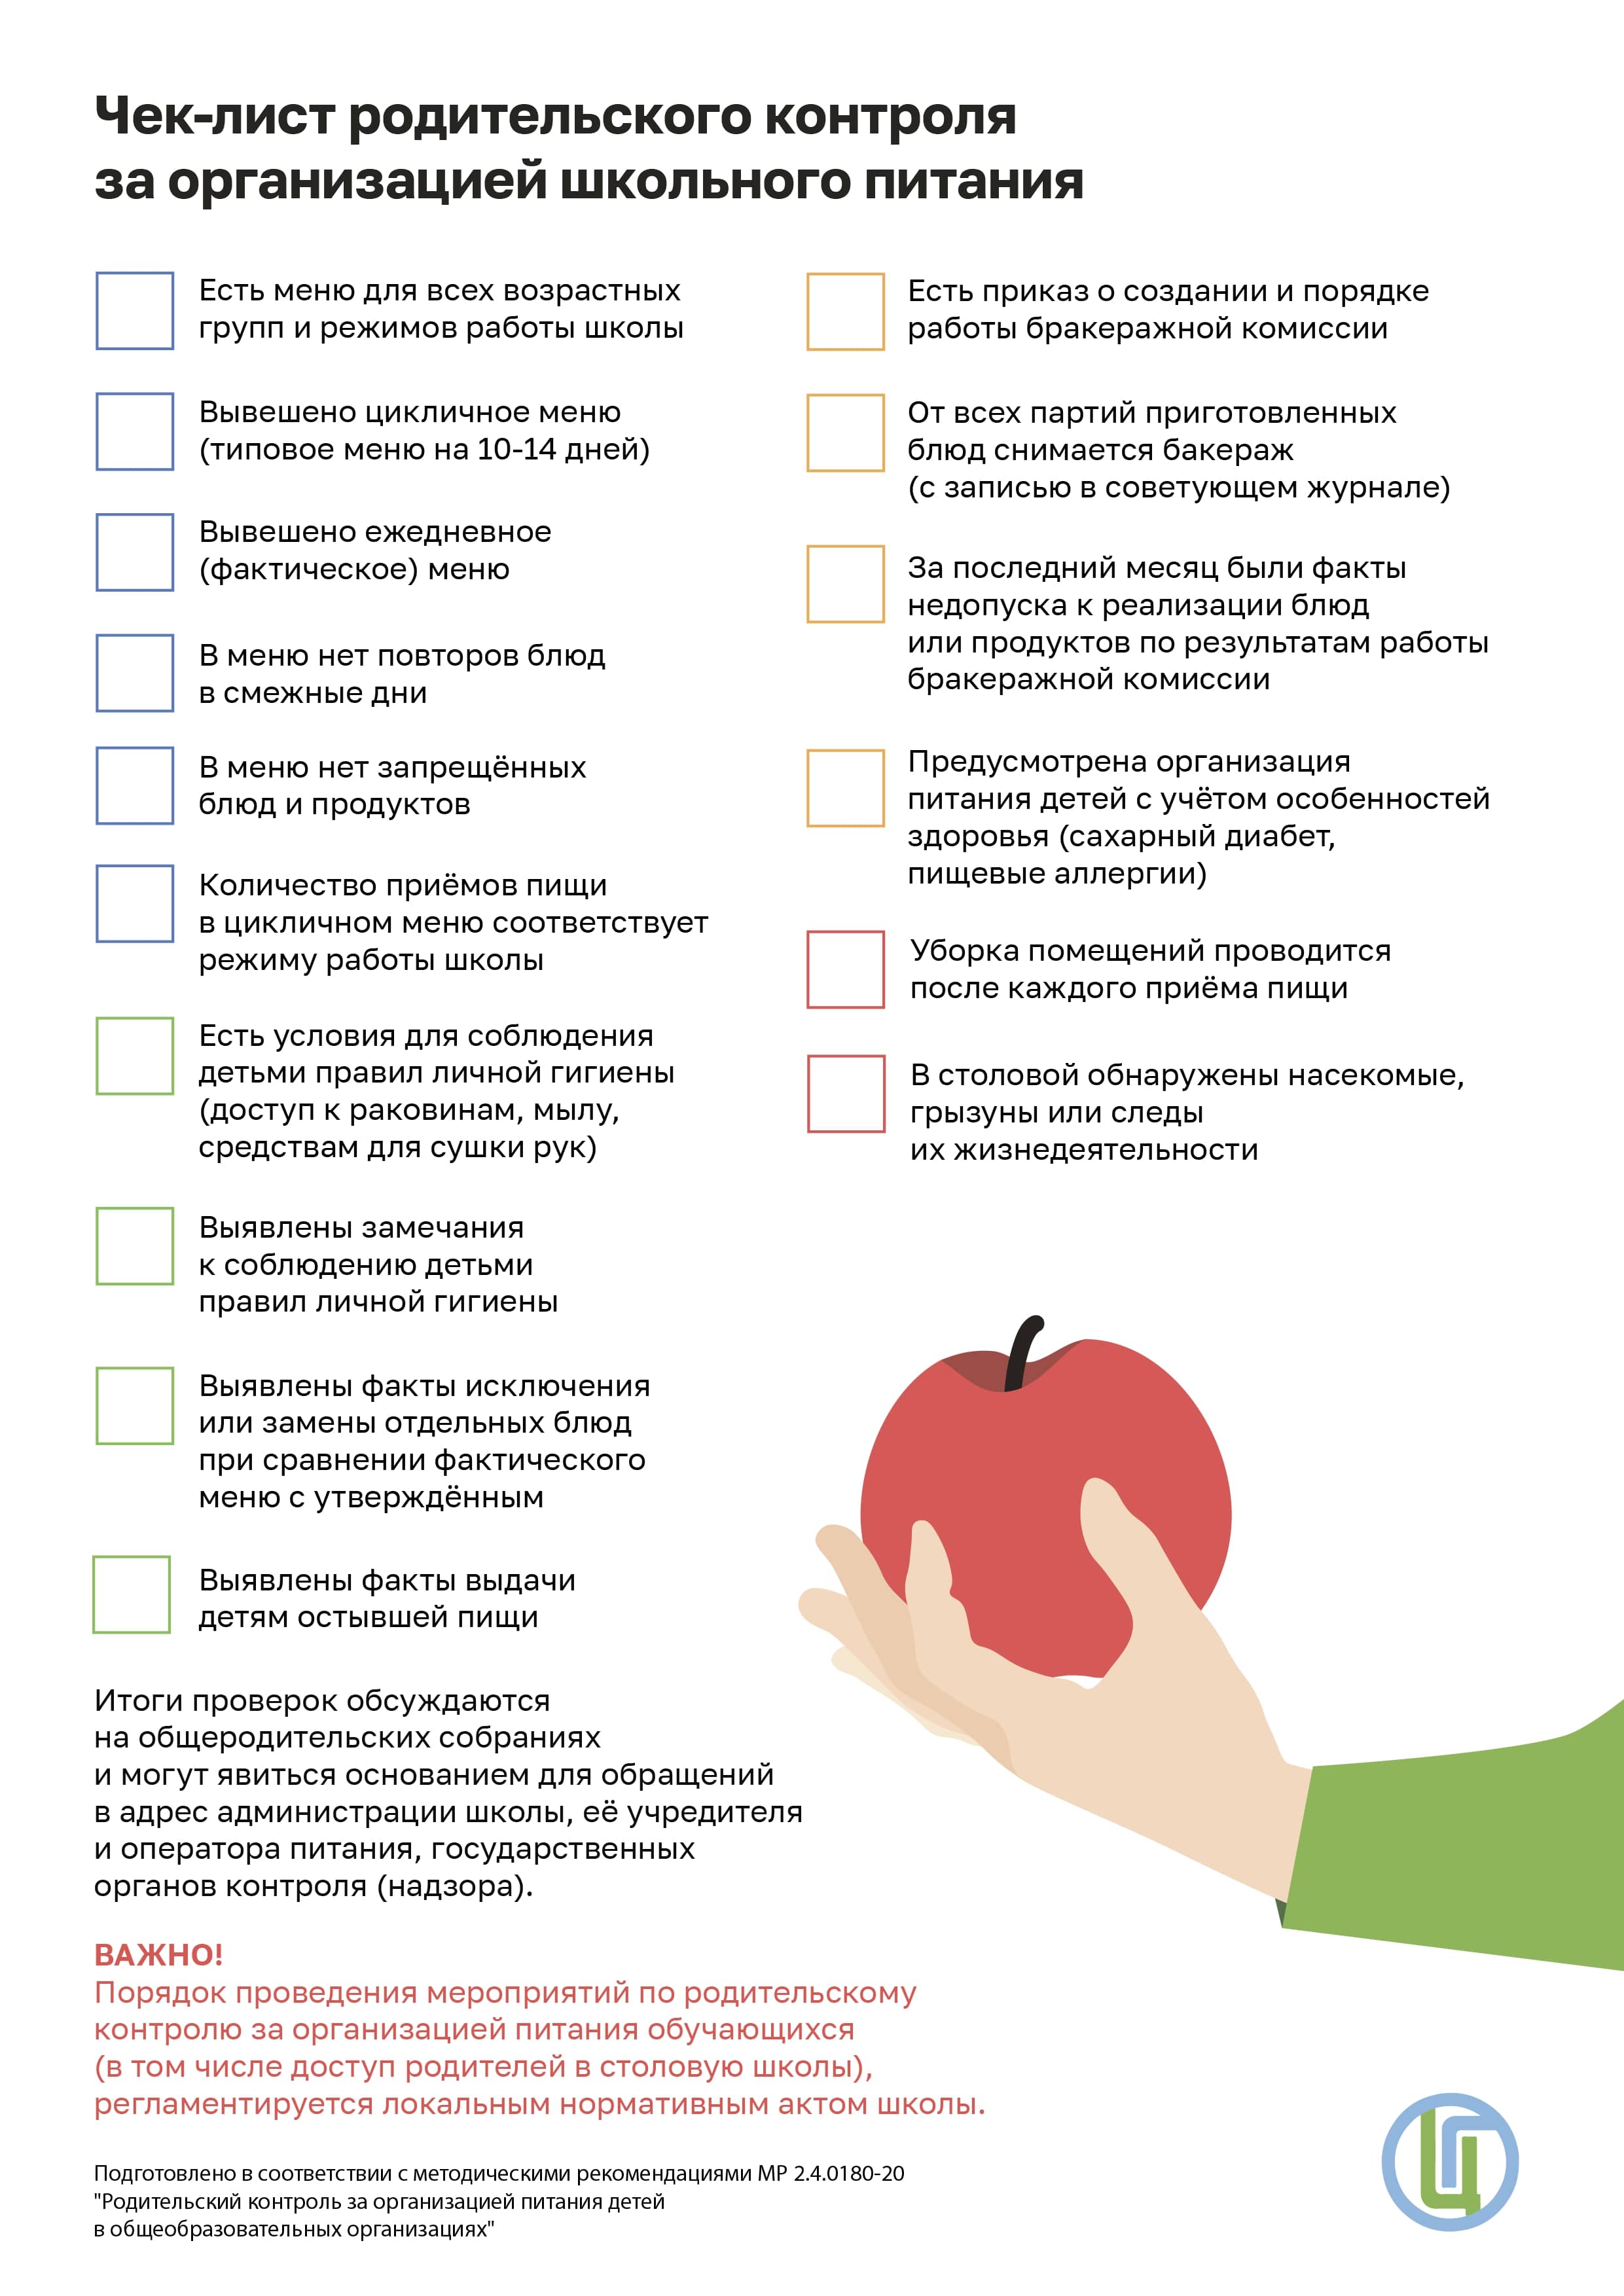 Чек-лист родительского контроля за организацией школьного питания.